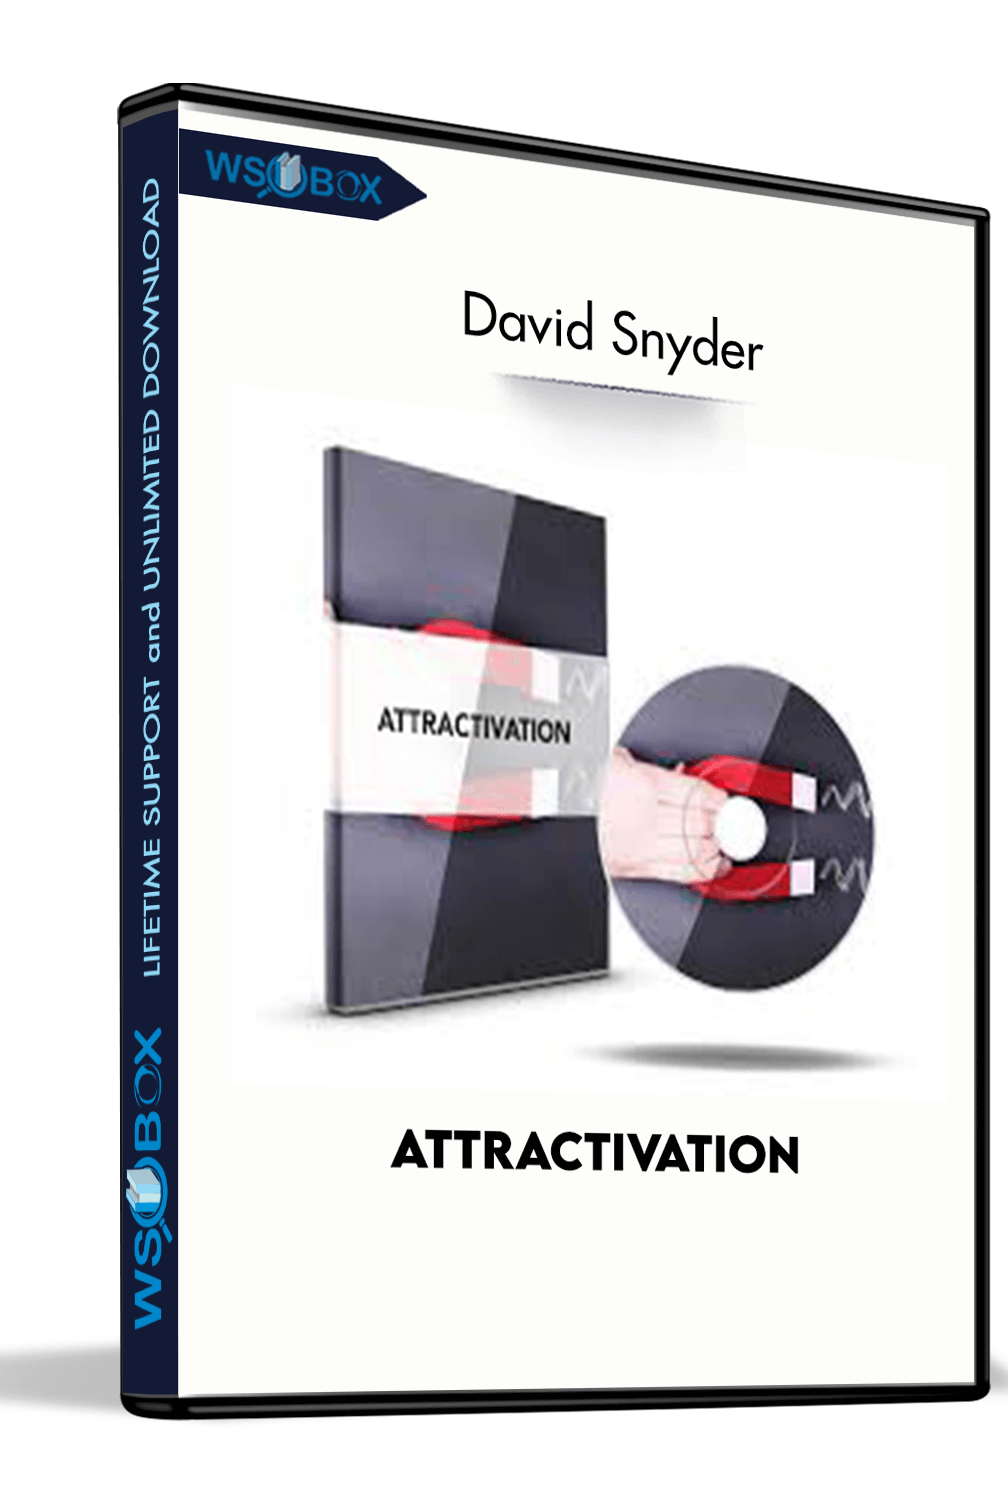 Attractivation – David Snyder